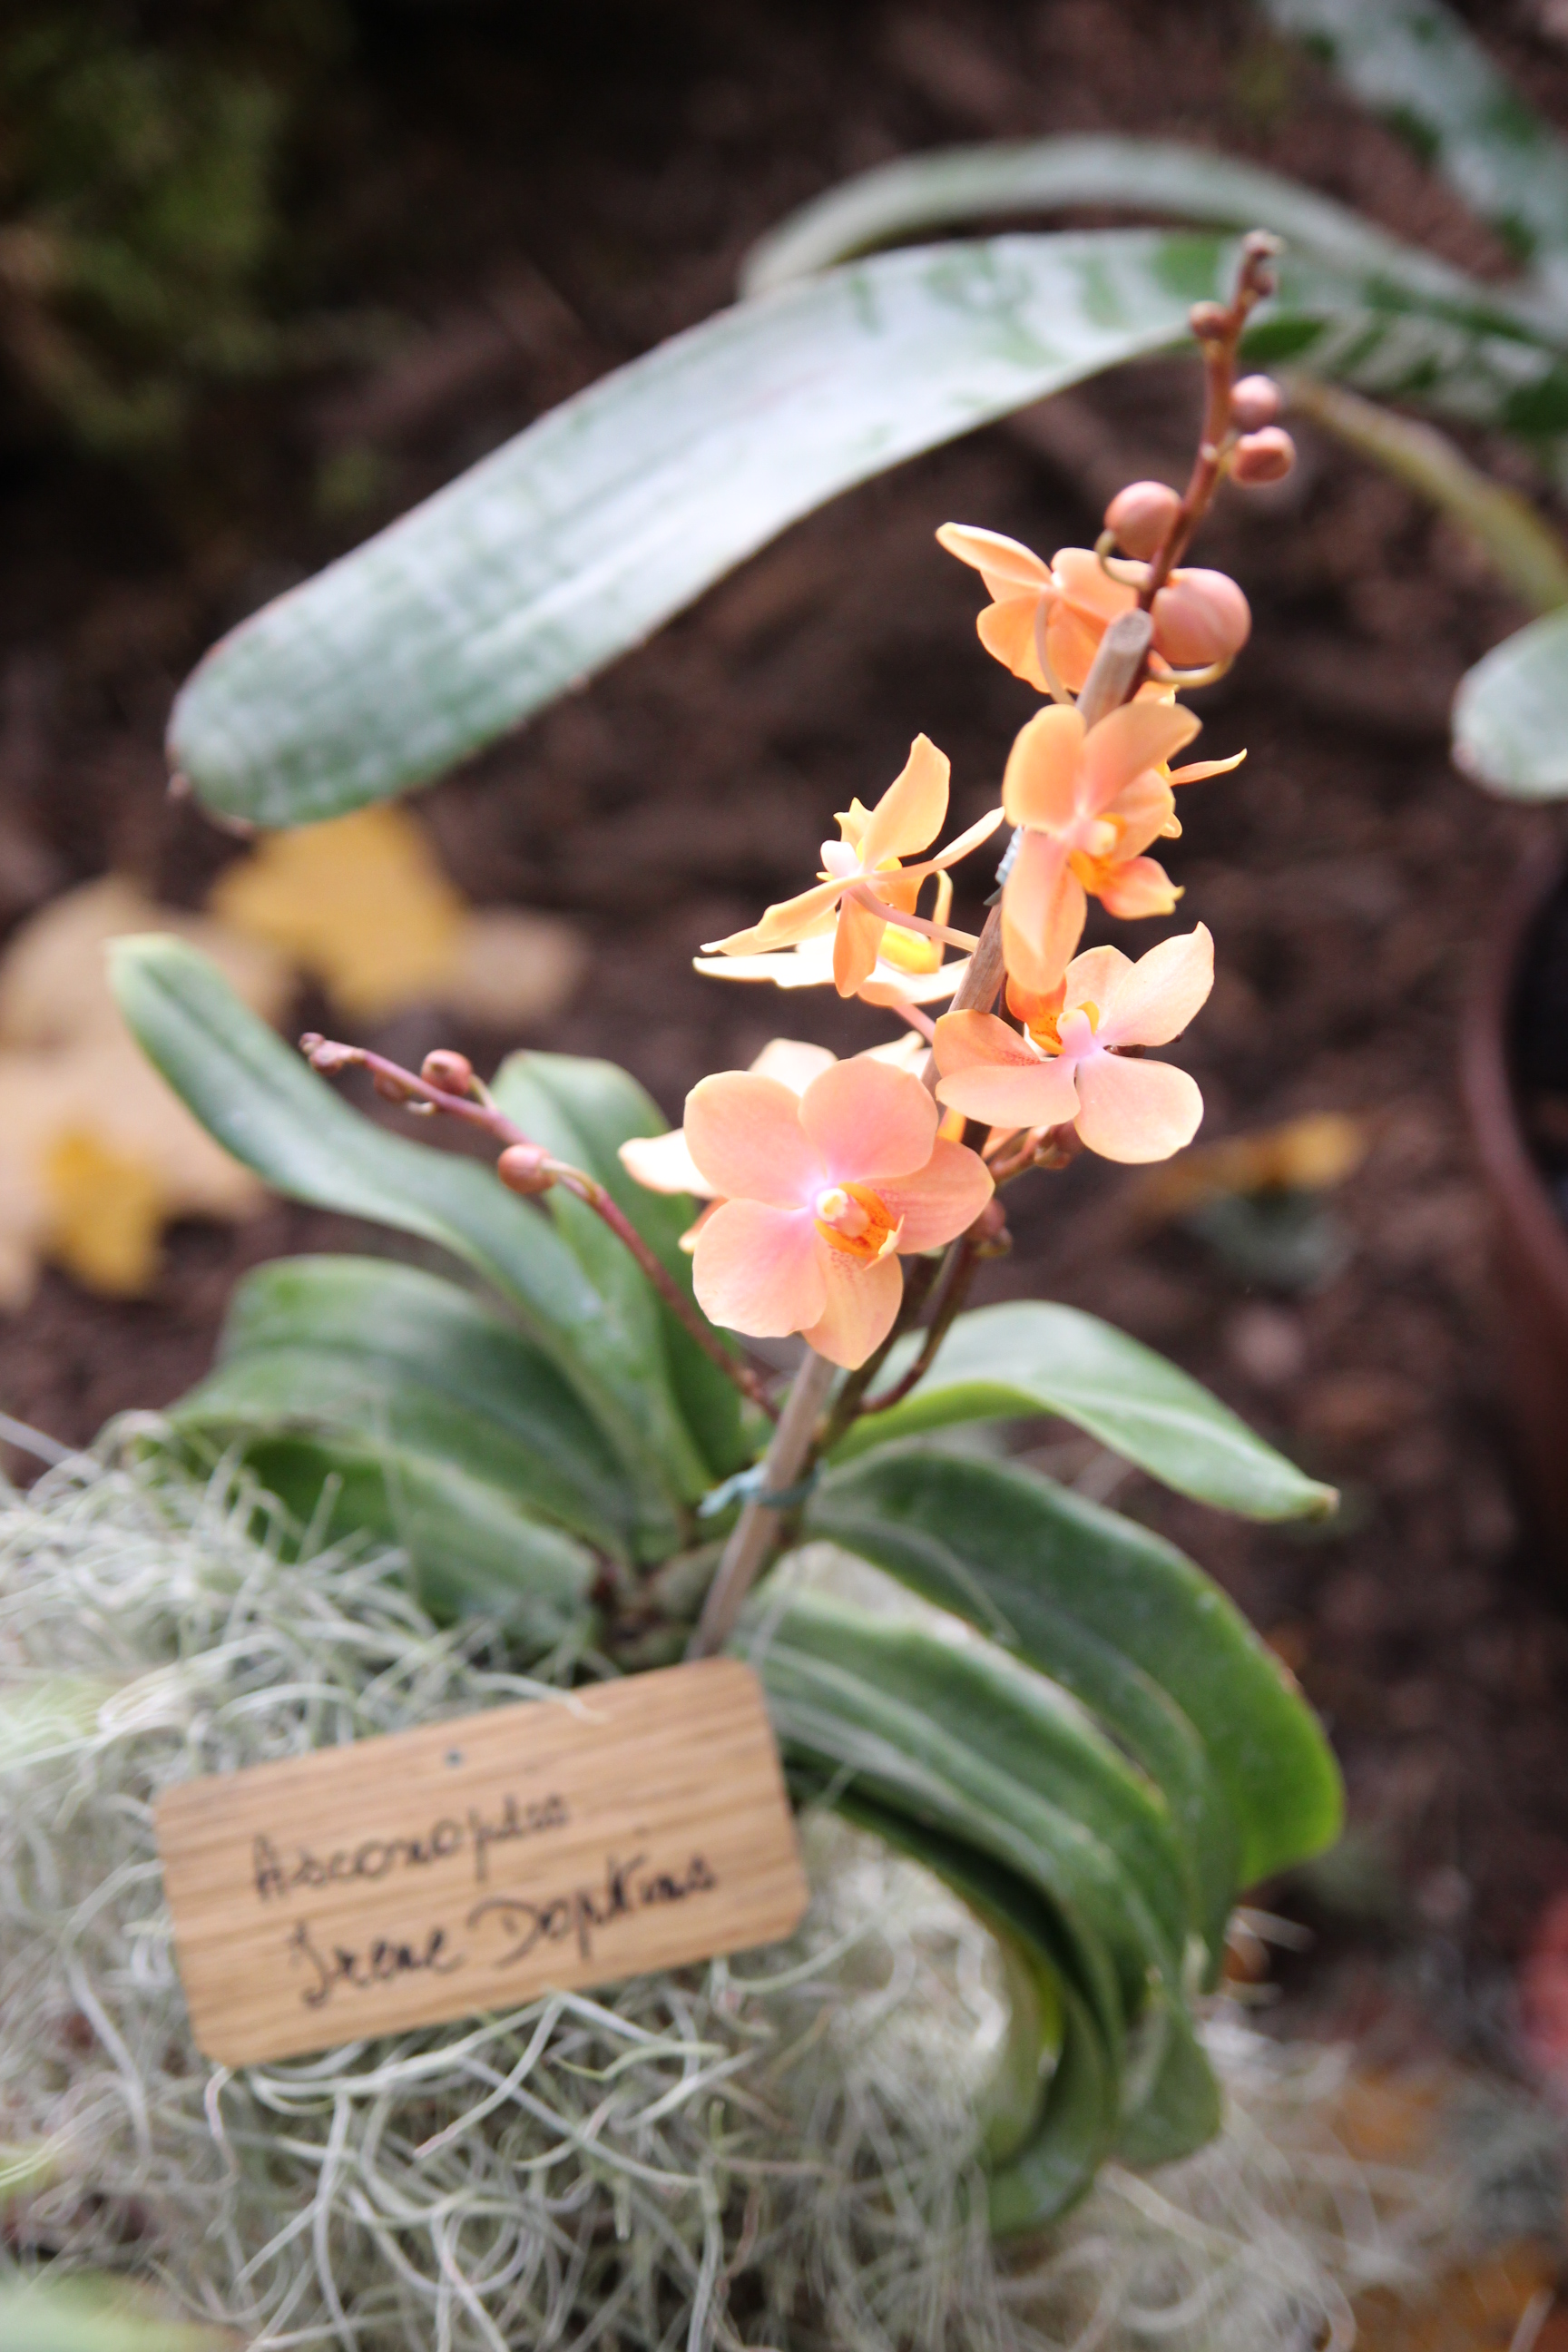 Orchidées expo-vente au Parc Floral